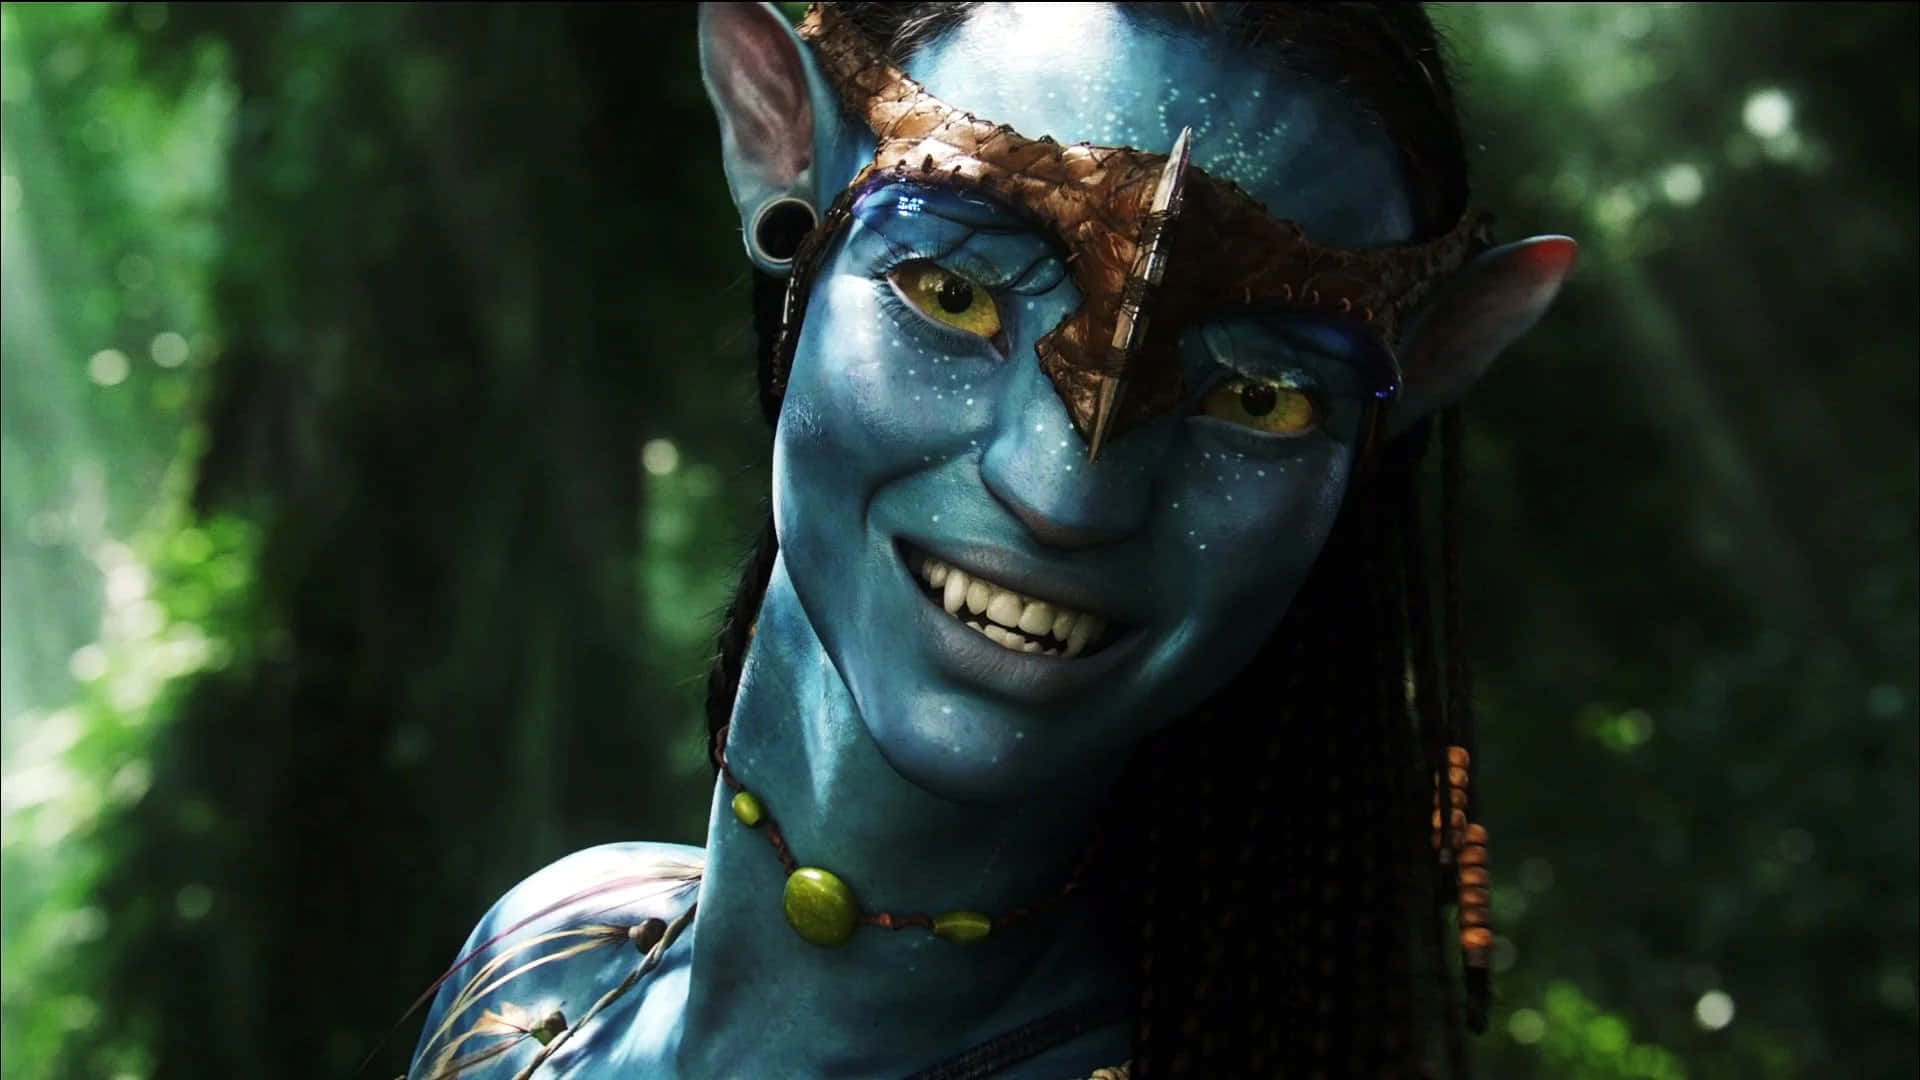 Jamescamerons Epischer Blockbuster Avatar Entführt Zuschauer In Die Ferne Alien-welt Von Pandora.